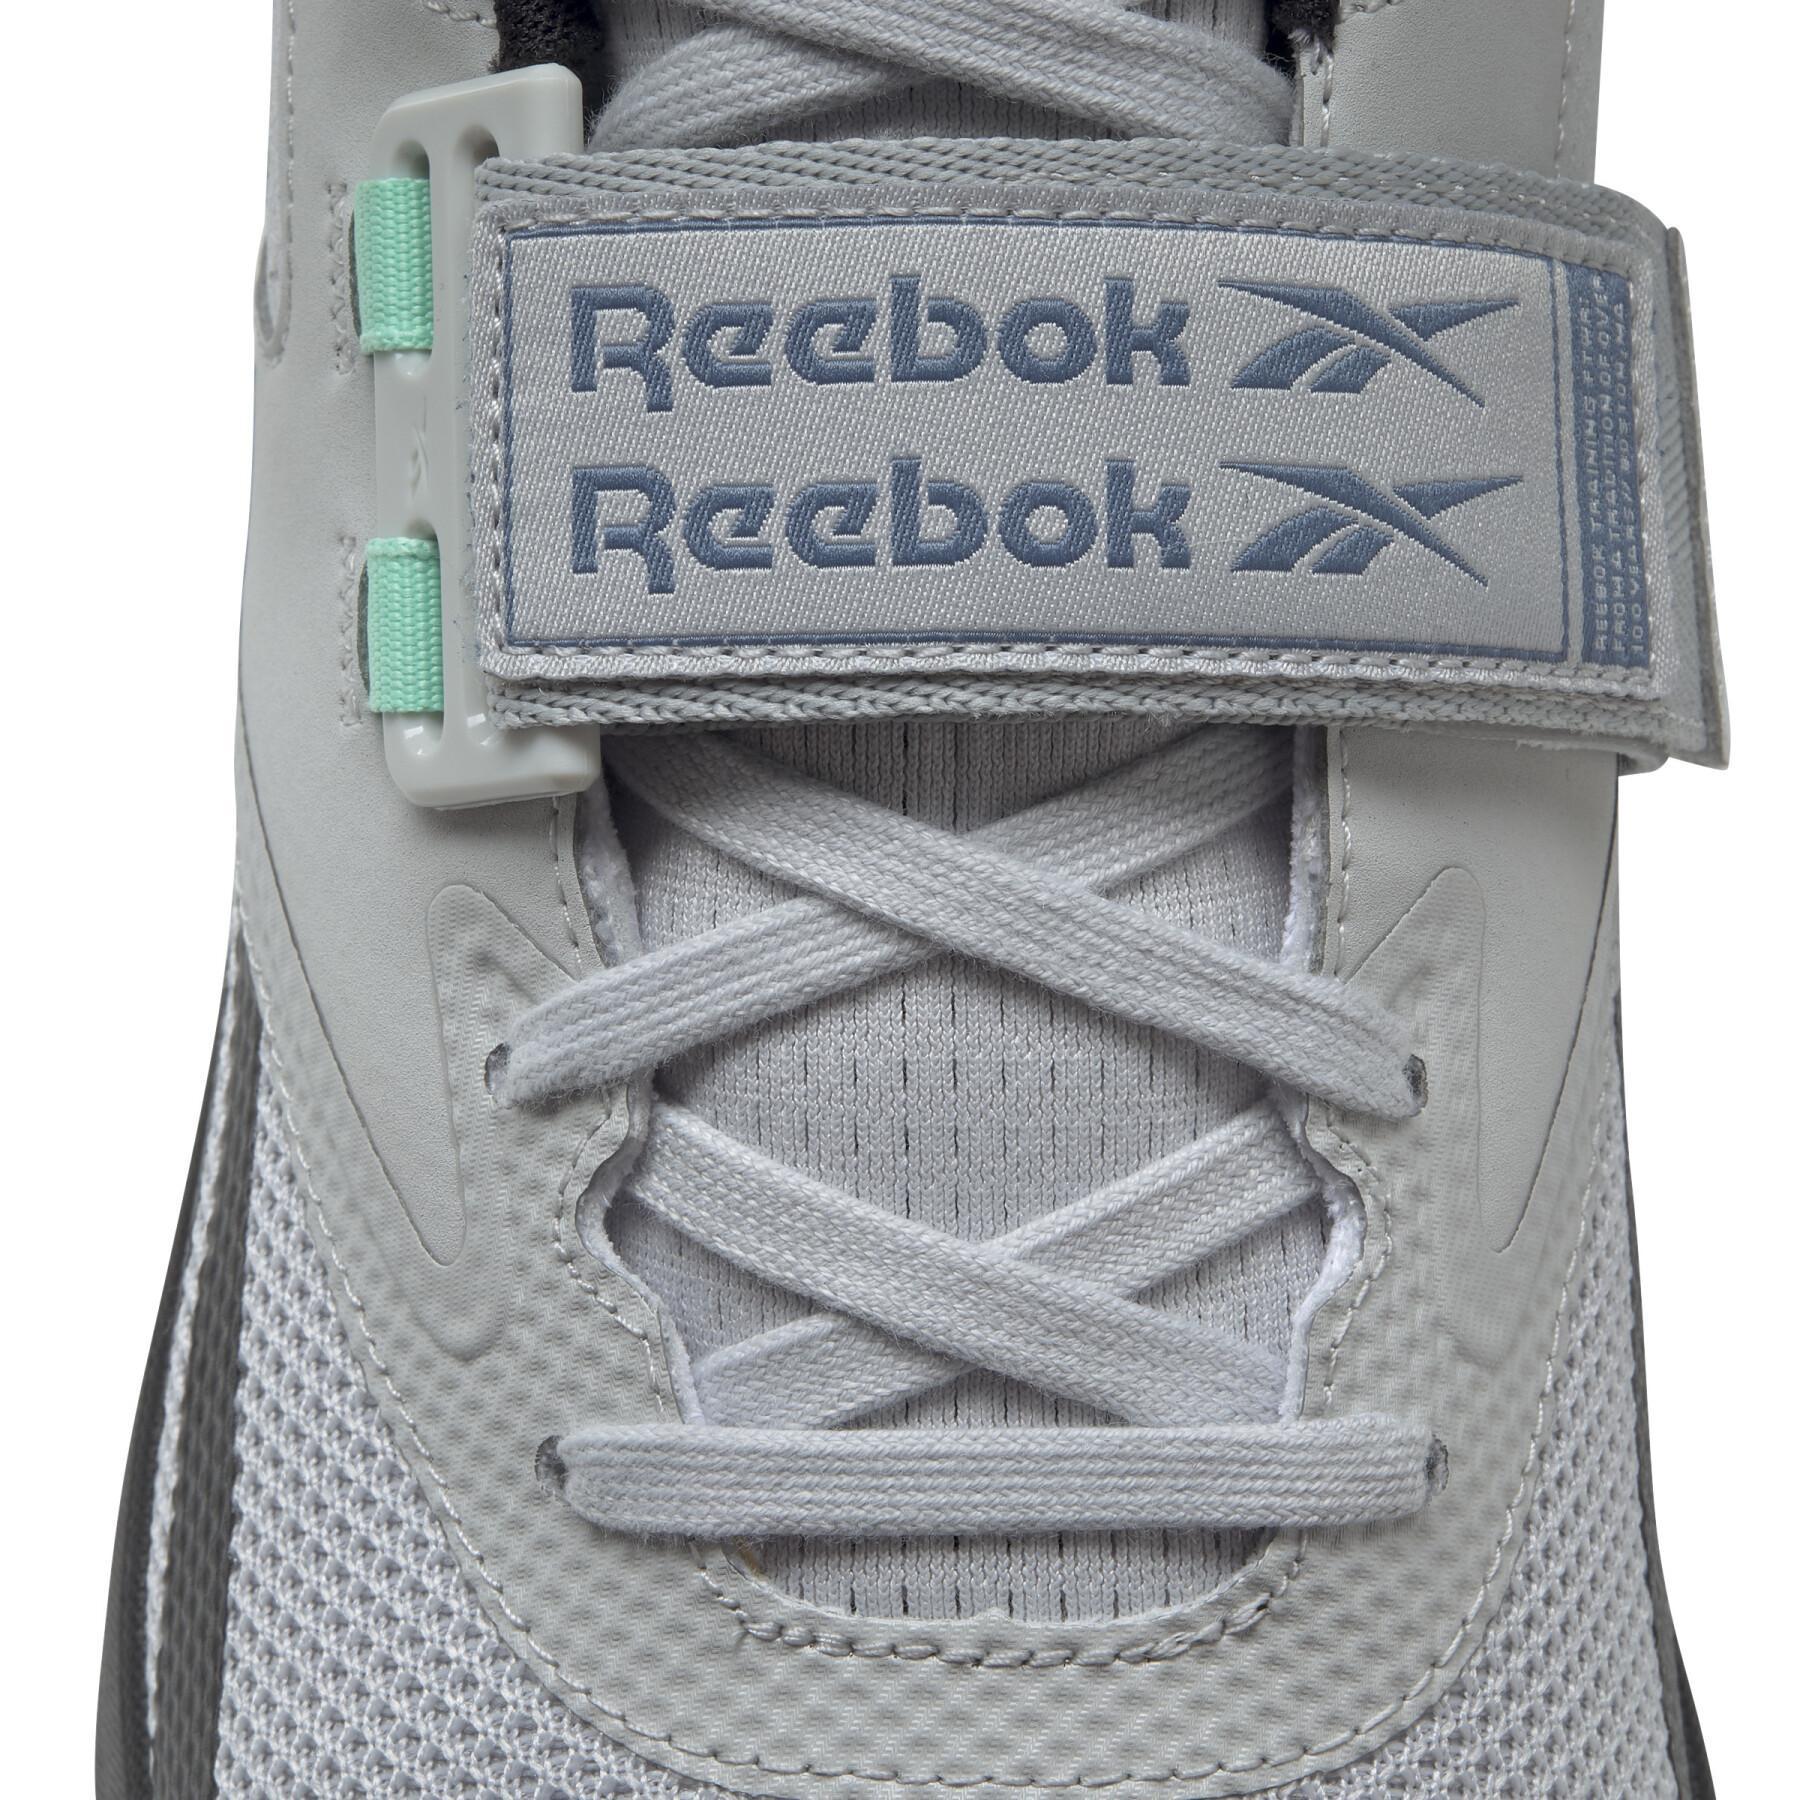 Shoes Reebok lifter pr ii